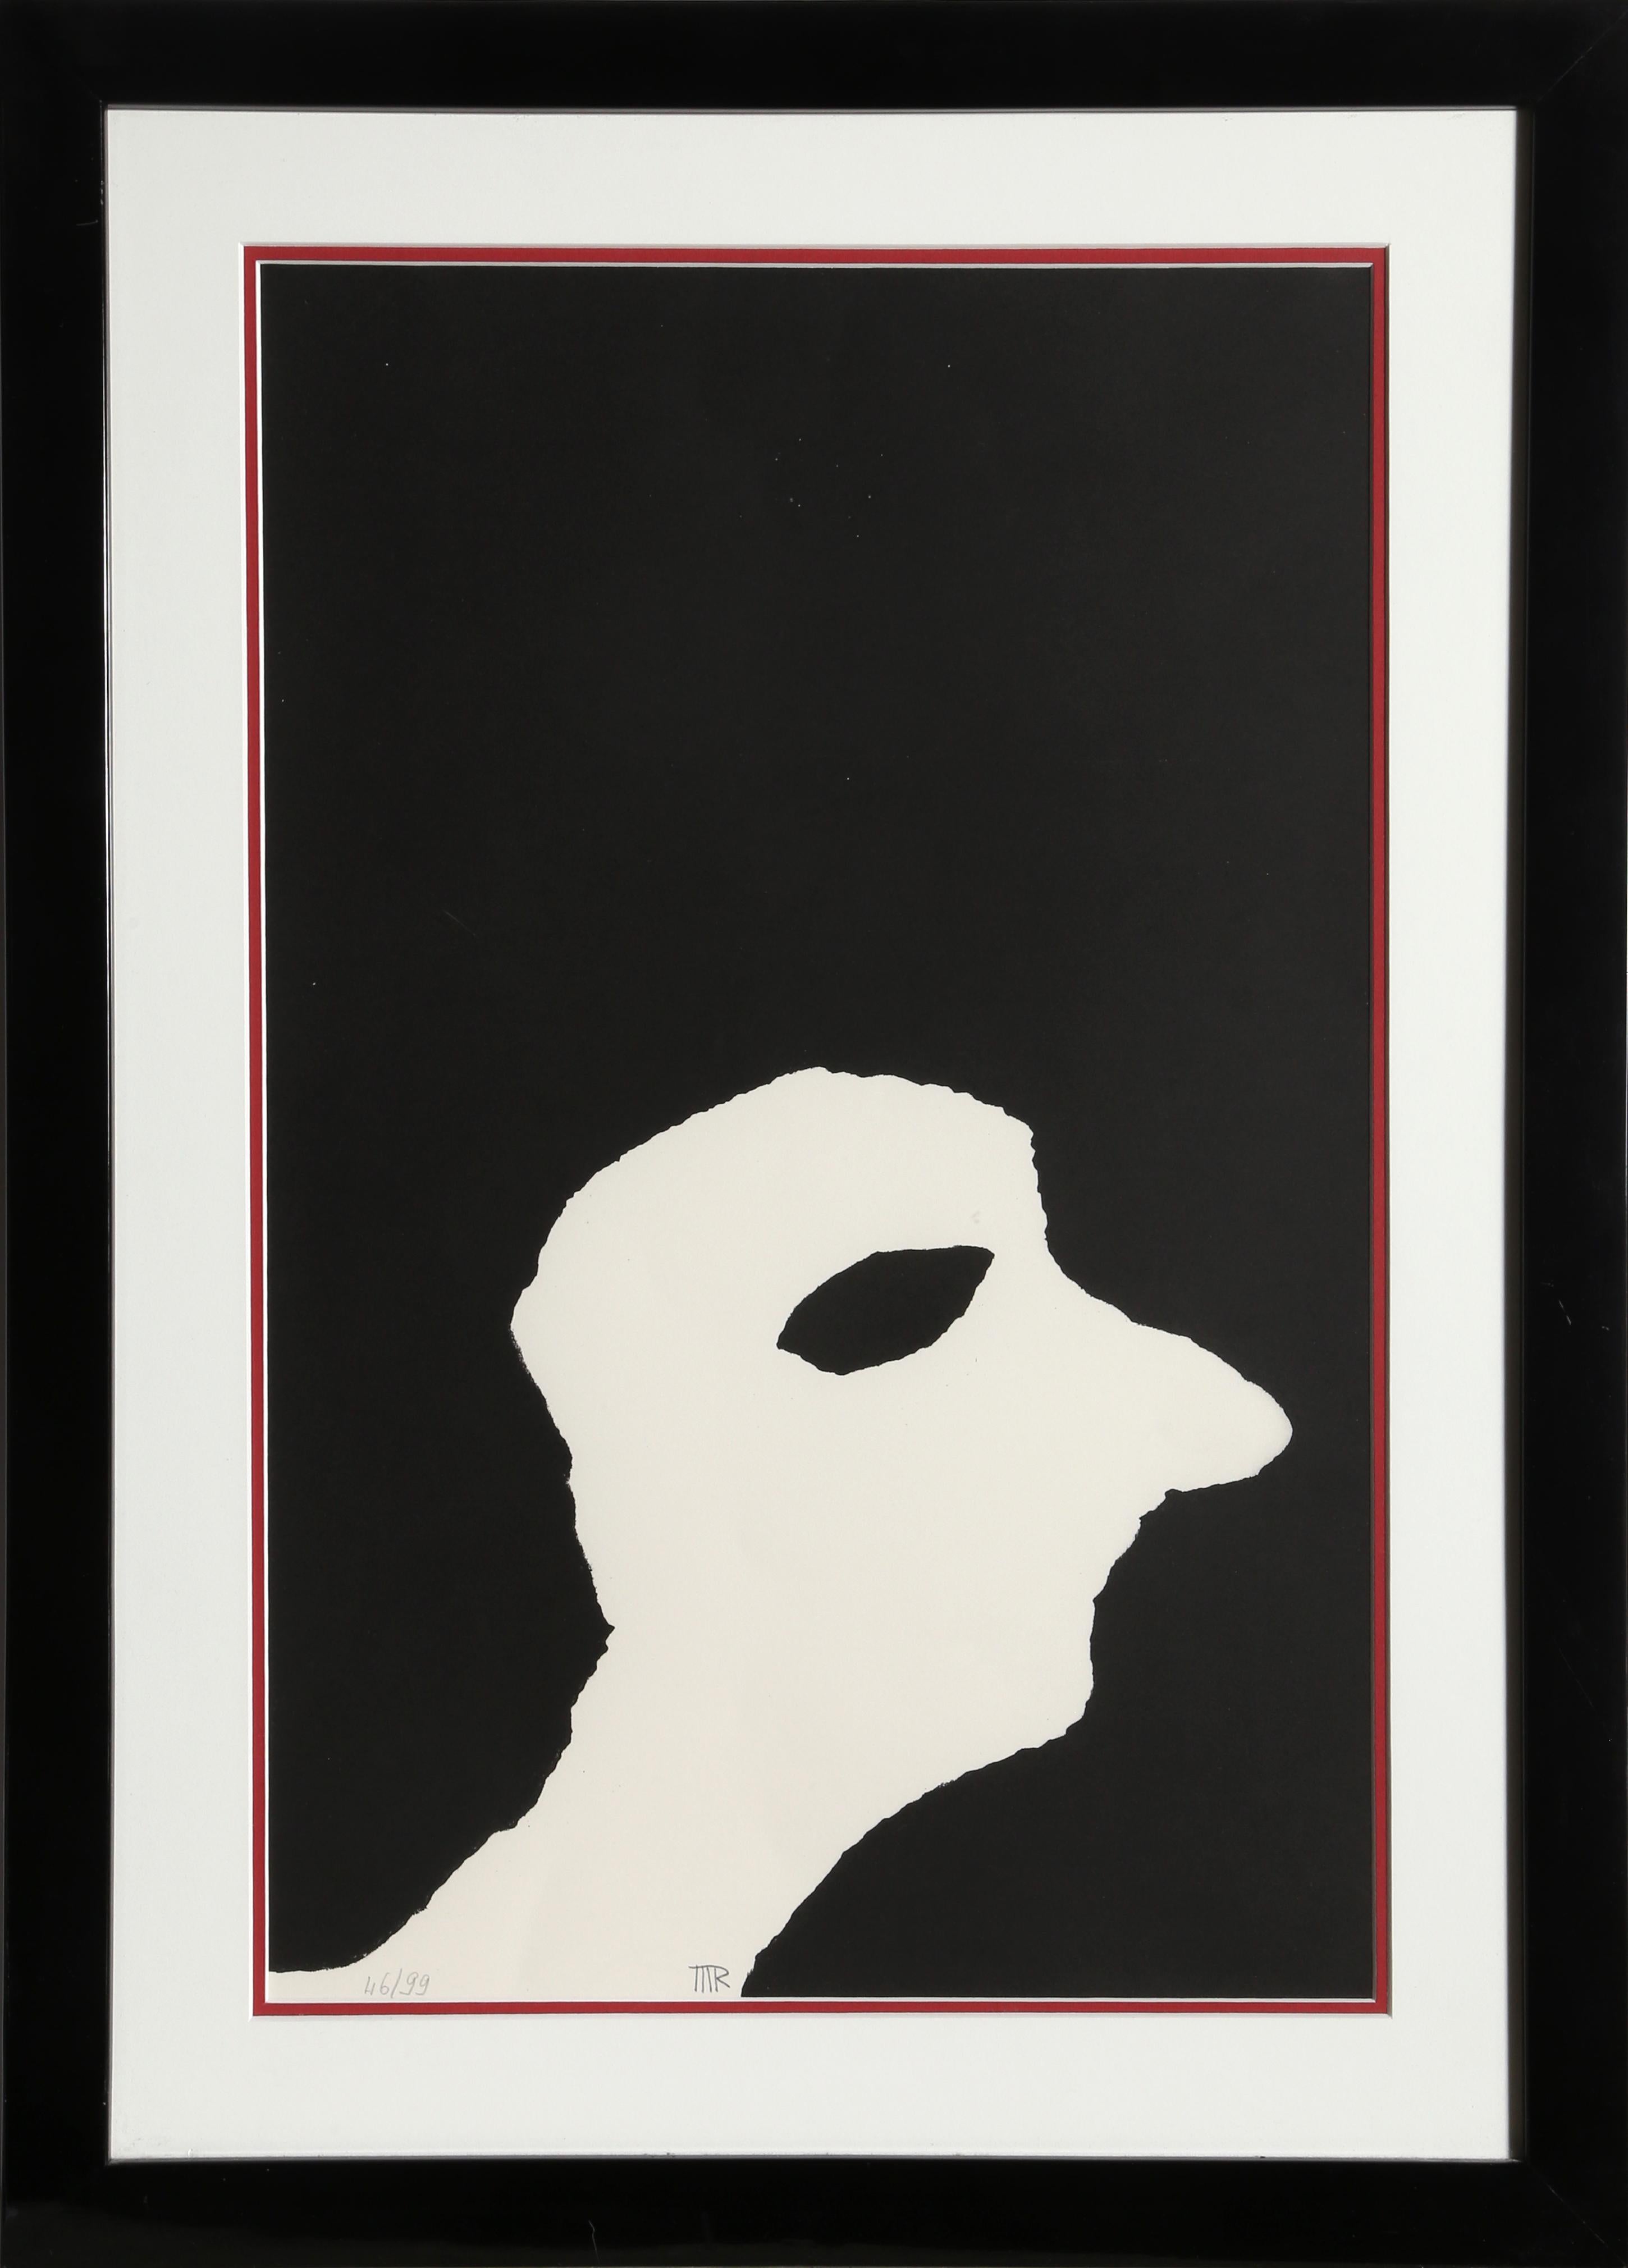 L'album des demeures d'Hypnos, Lithographie von Man Ray